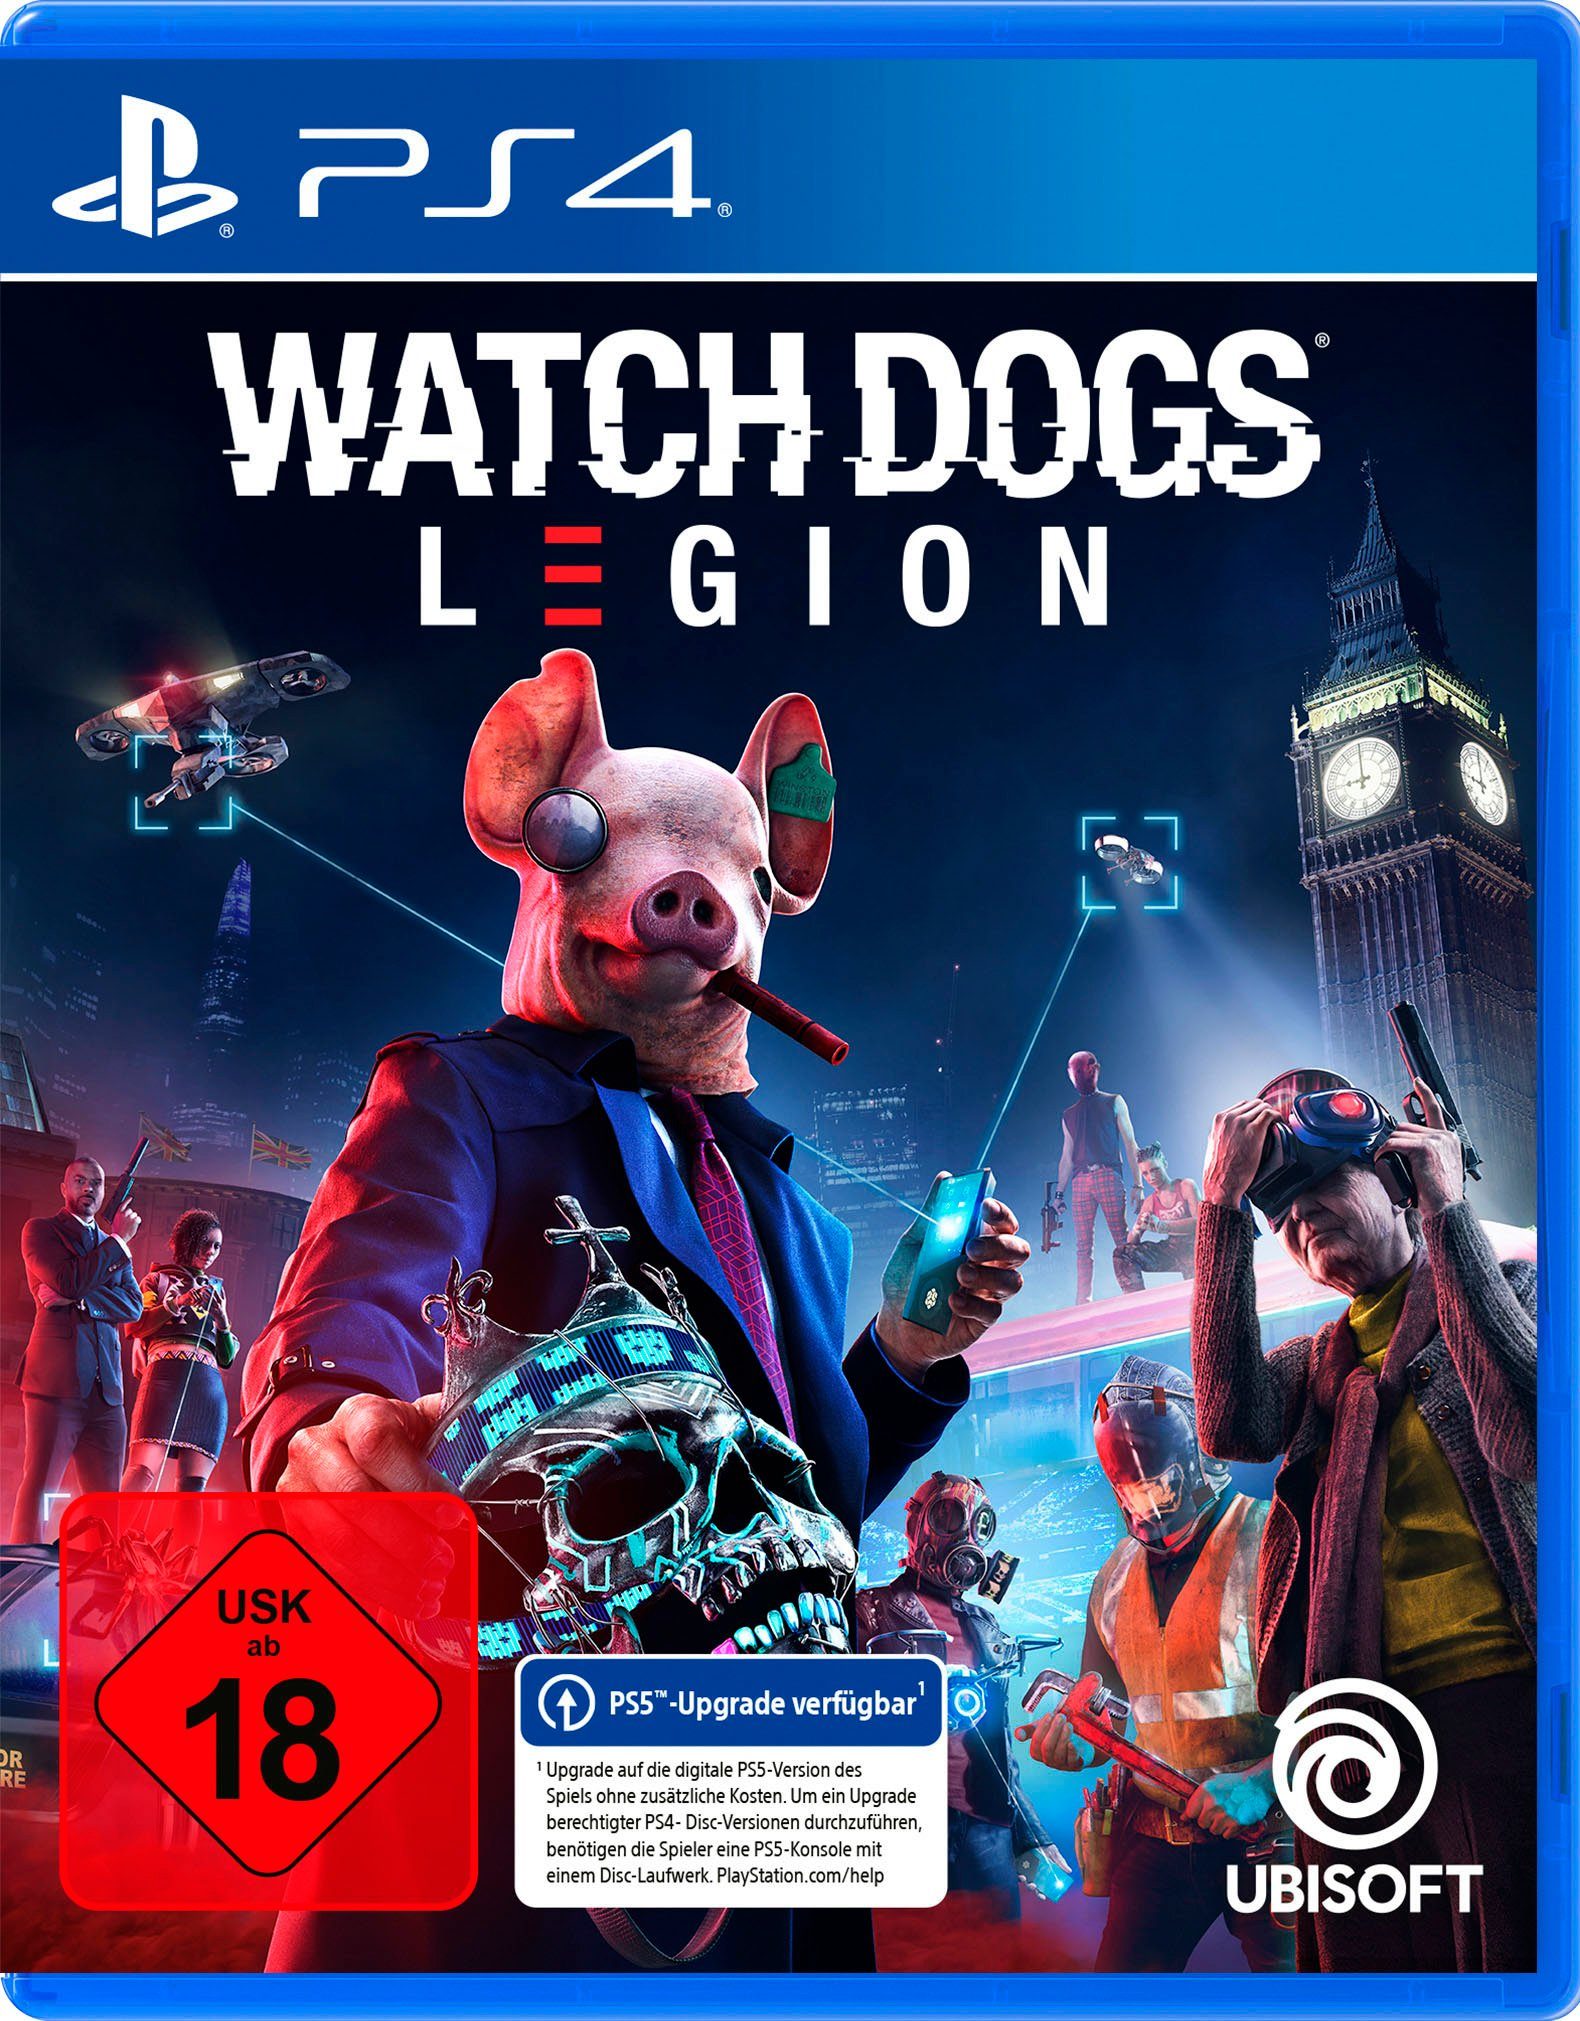 4 Dogs Legion UBISOFT PlayStation Watch